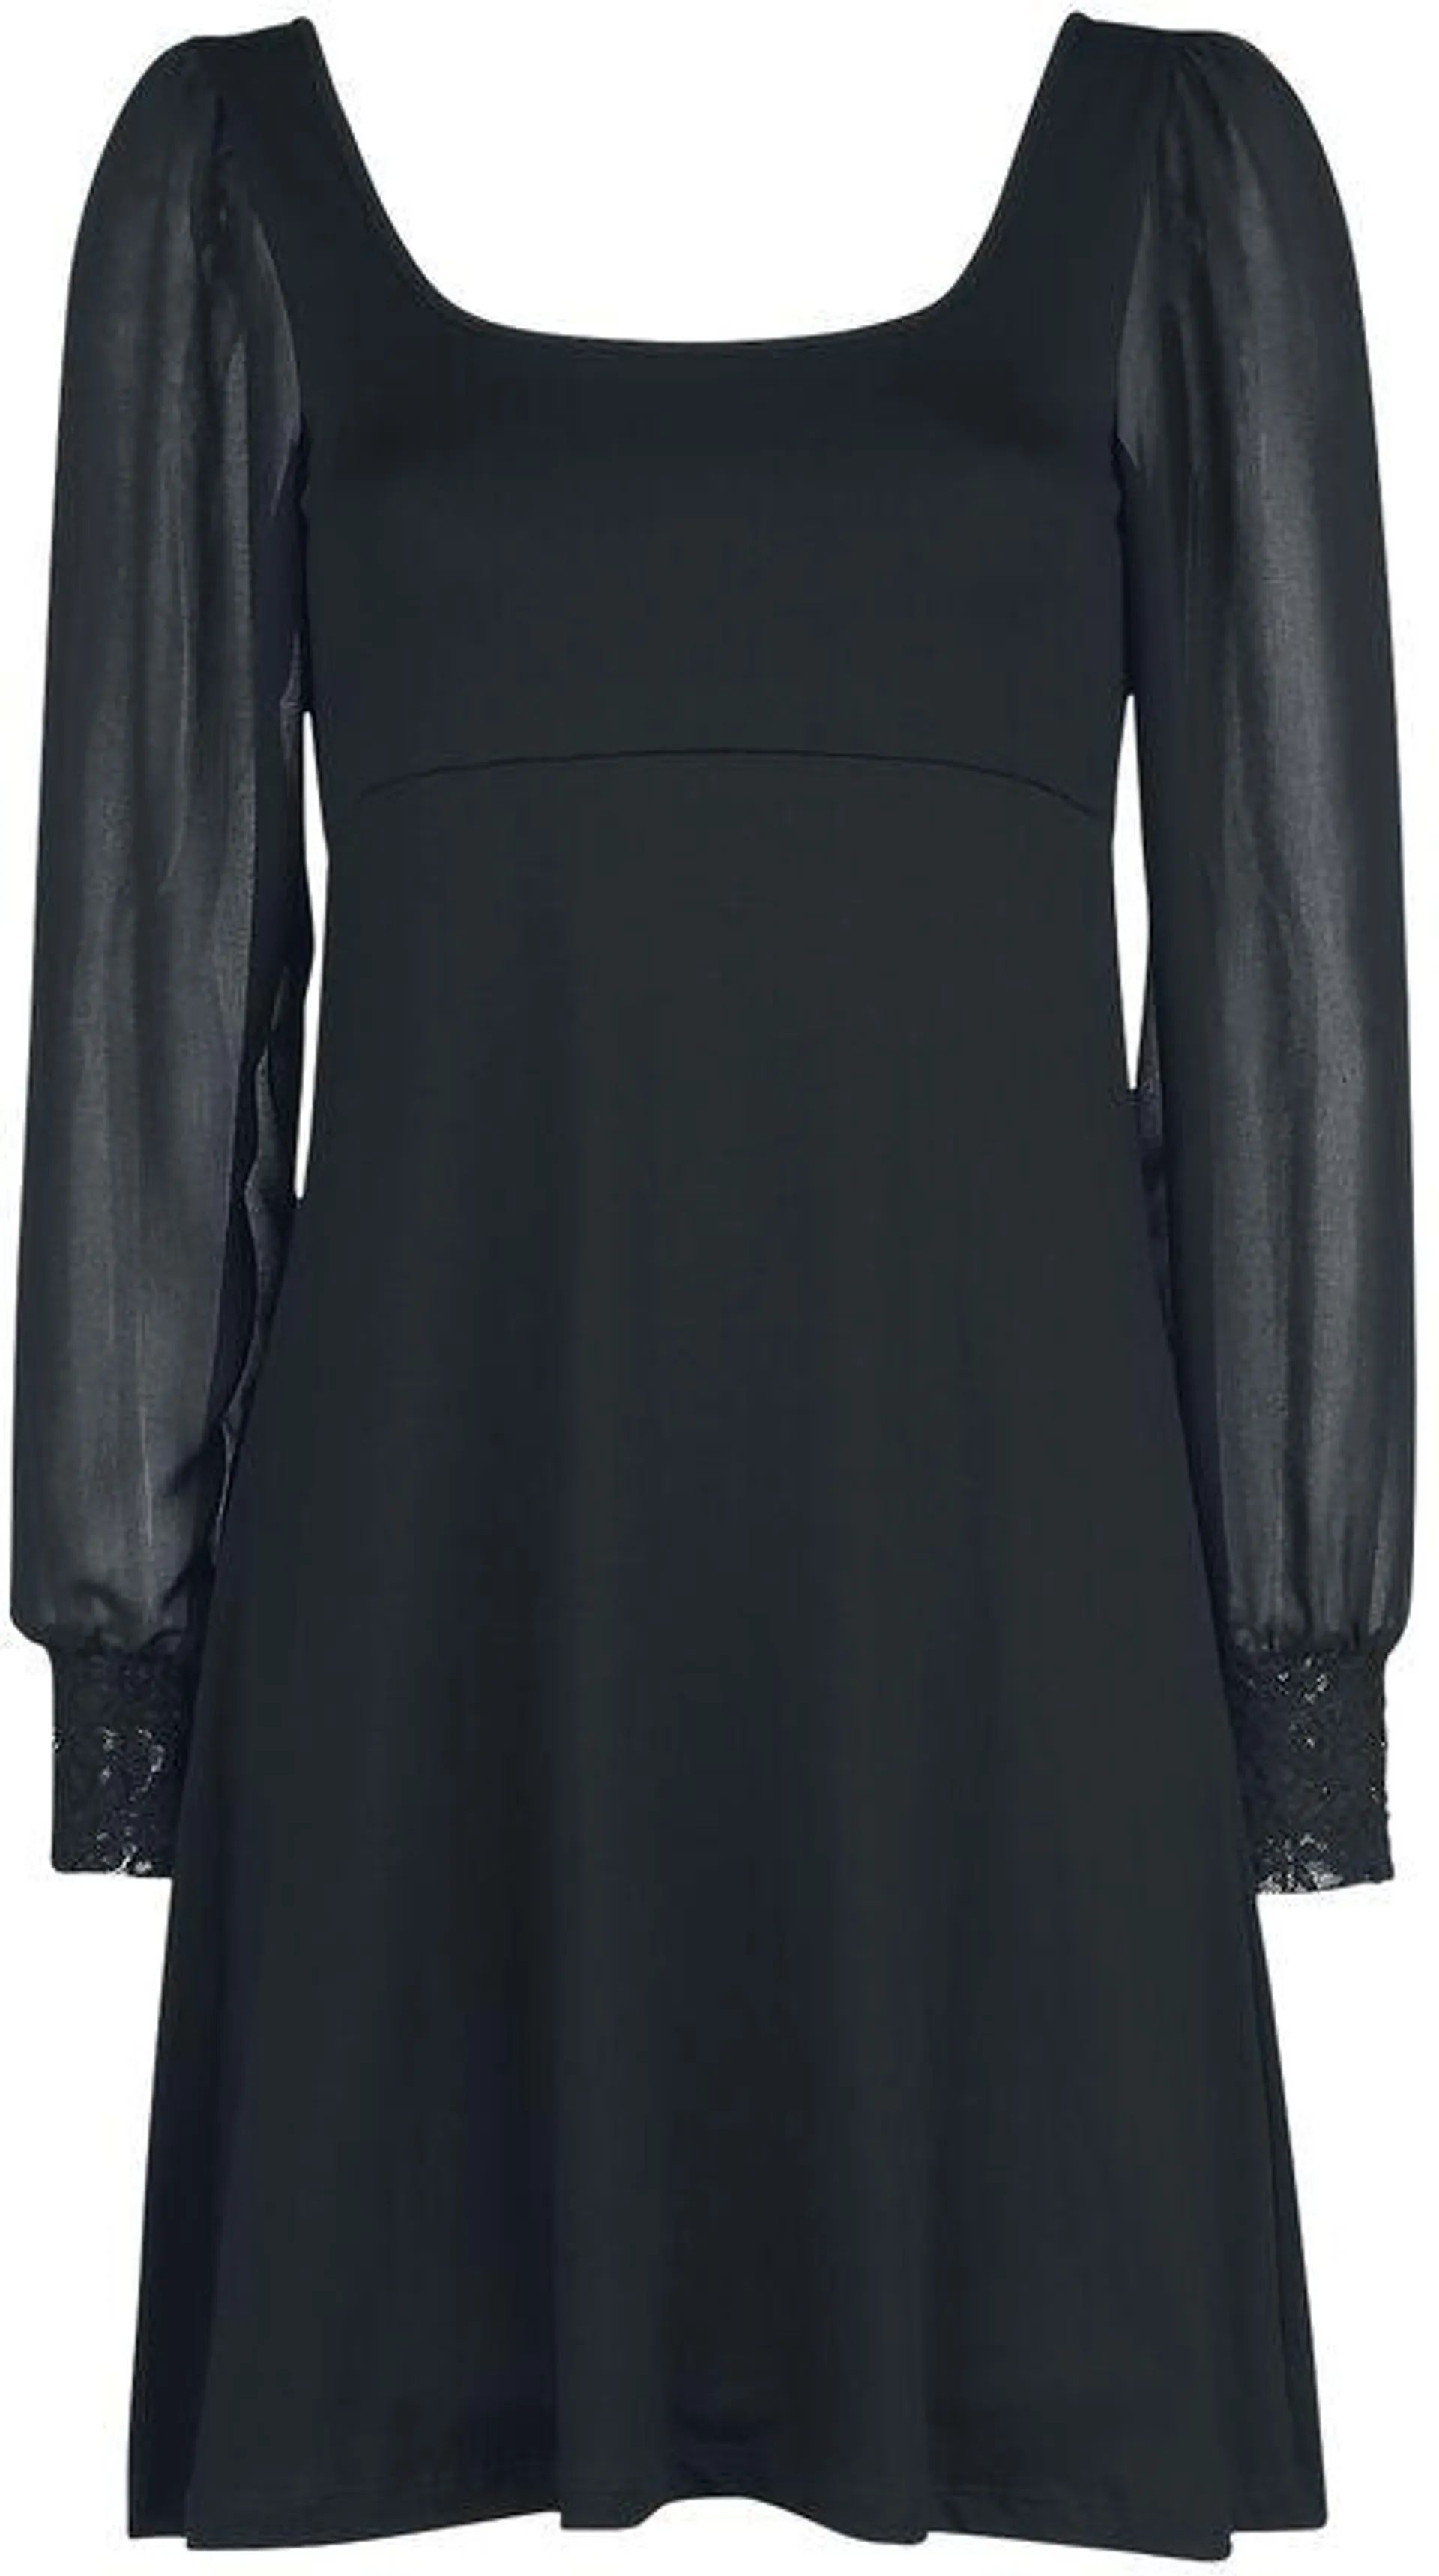 "Dress Bet" Kurzes Kleid schwarz von Outer Vision